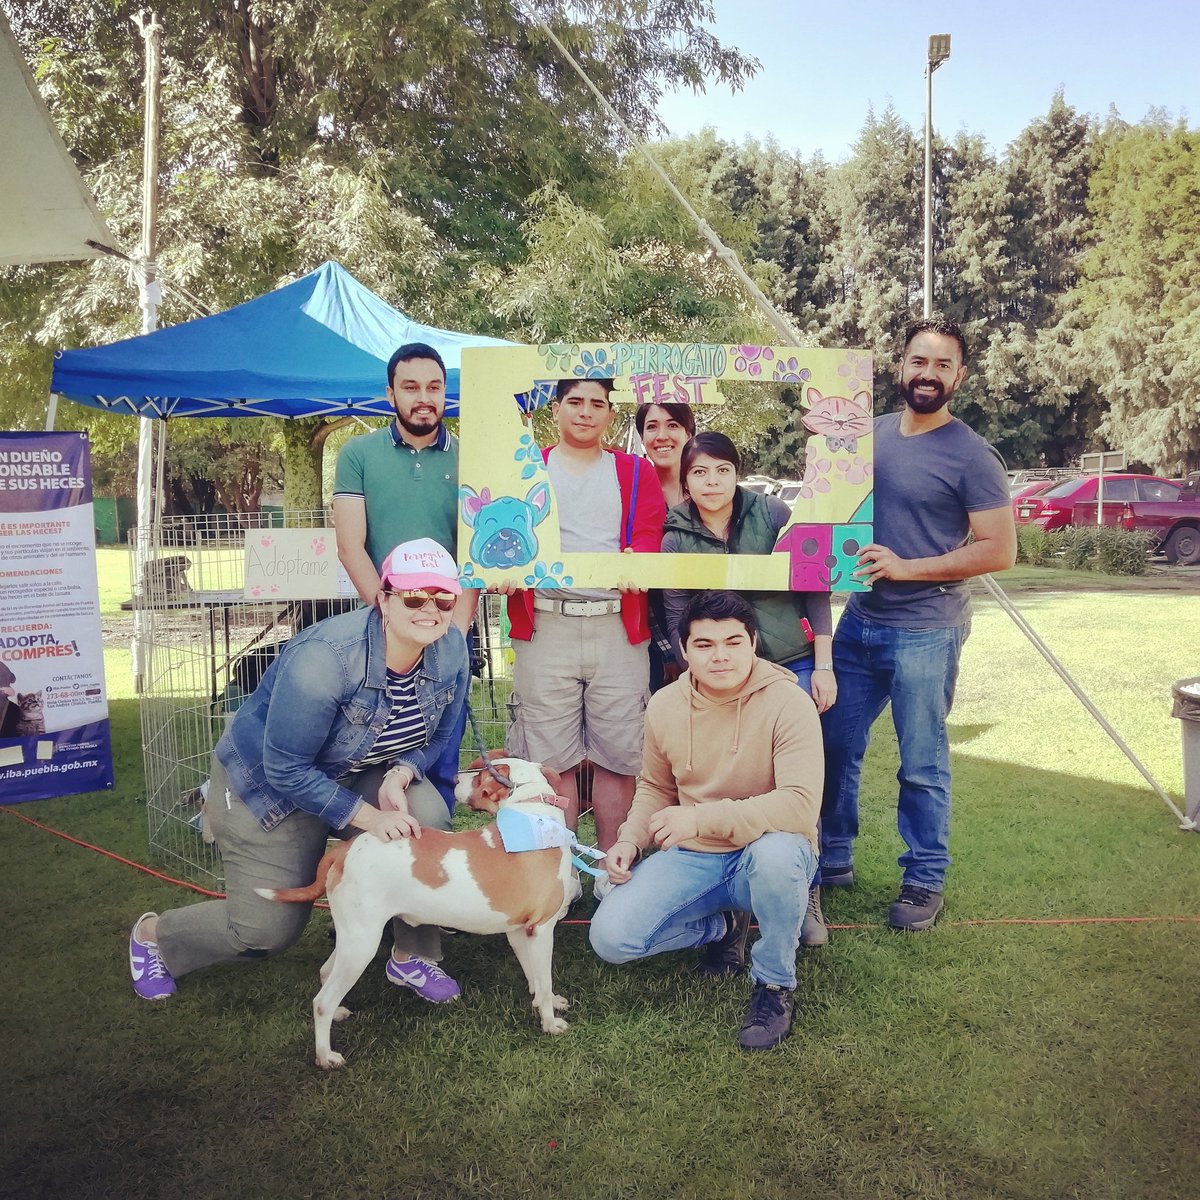 2do día en el Perro Gato Fest, no te lo pierdas!
 🎊🎉🐈🐕🎉🎊
#TeamIBA #bienestaranimal #cholulapuebla